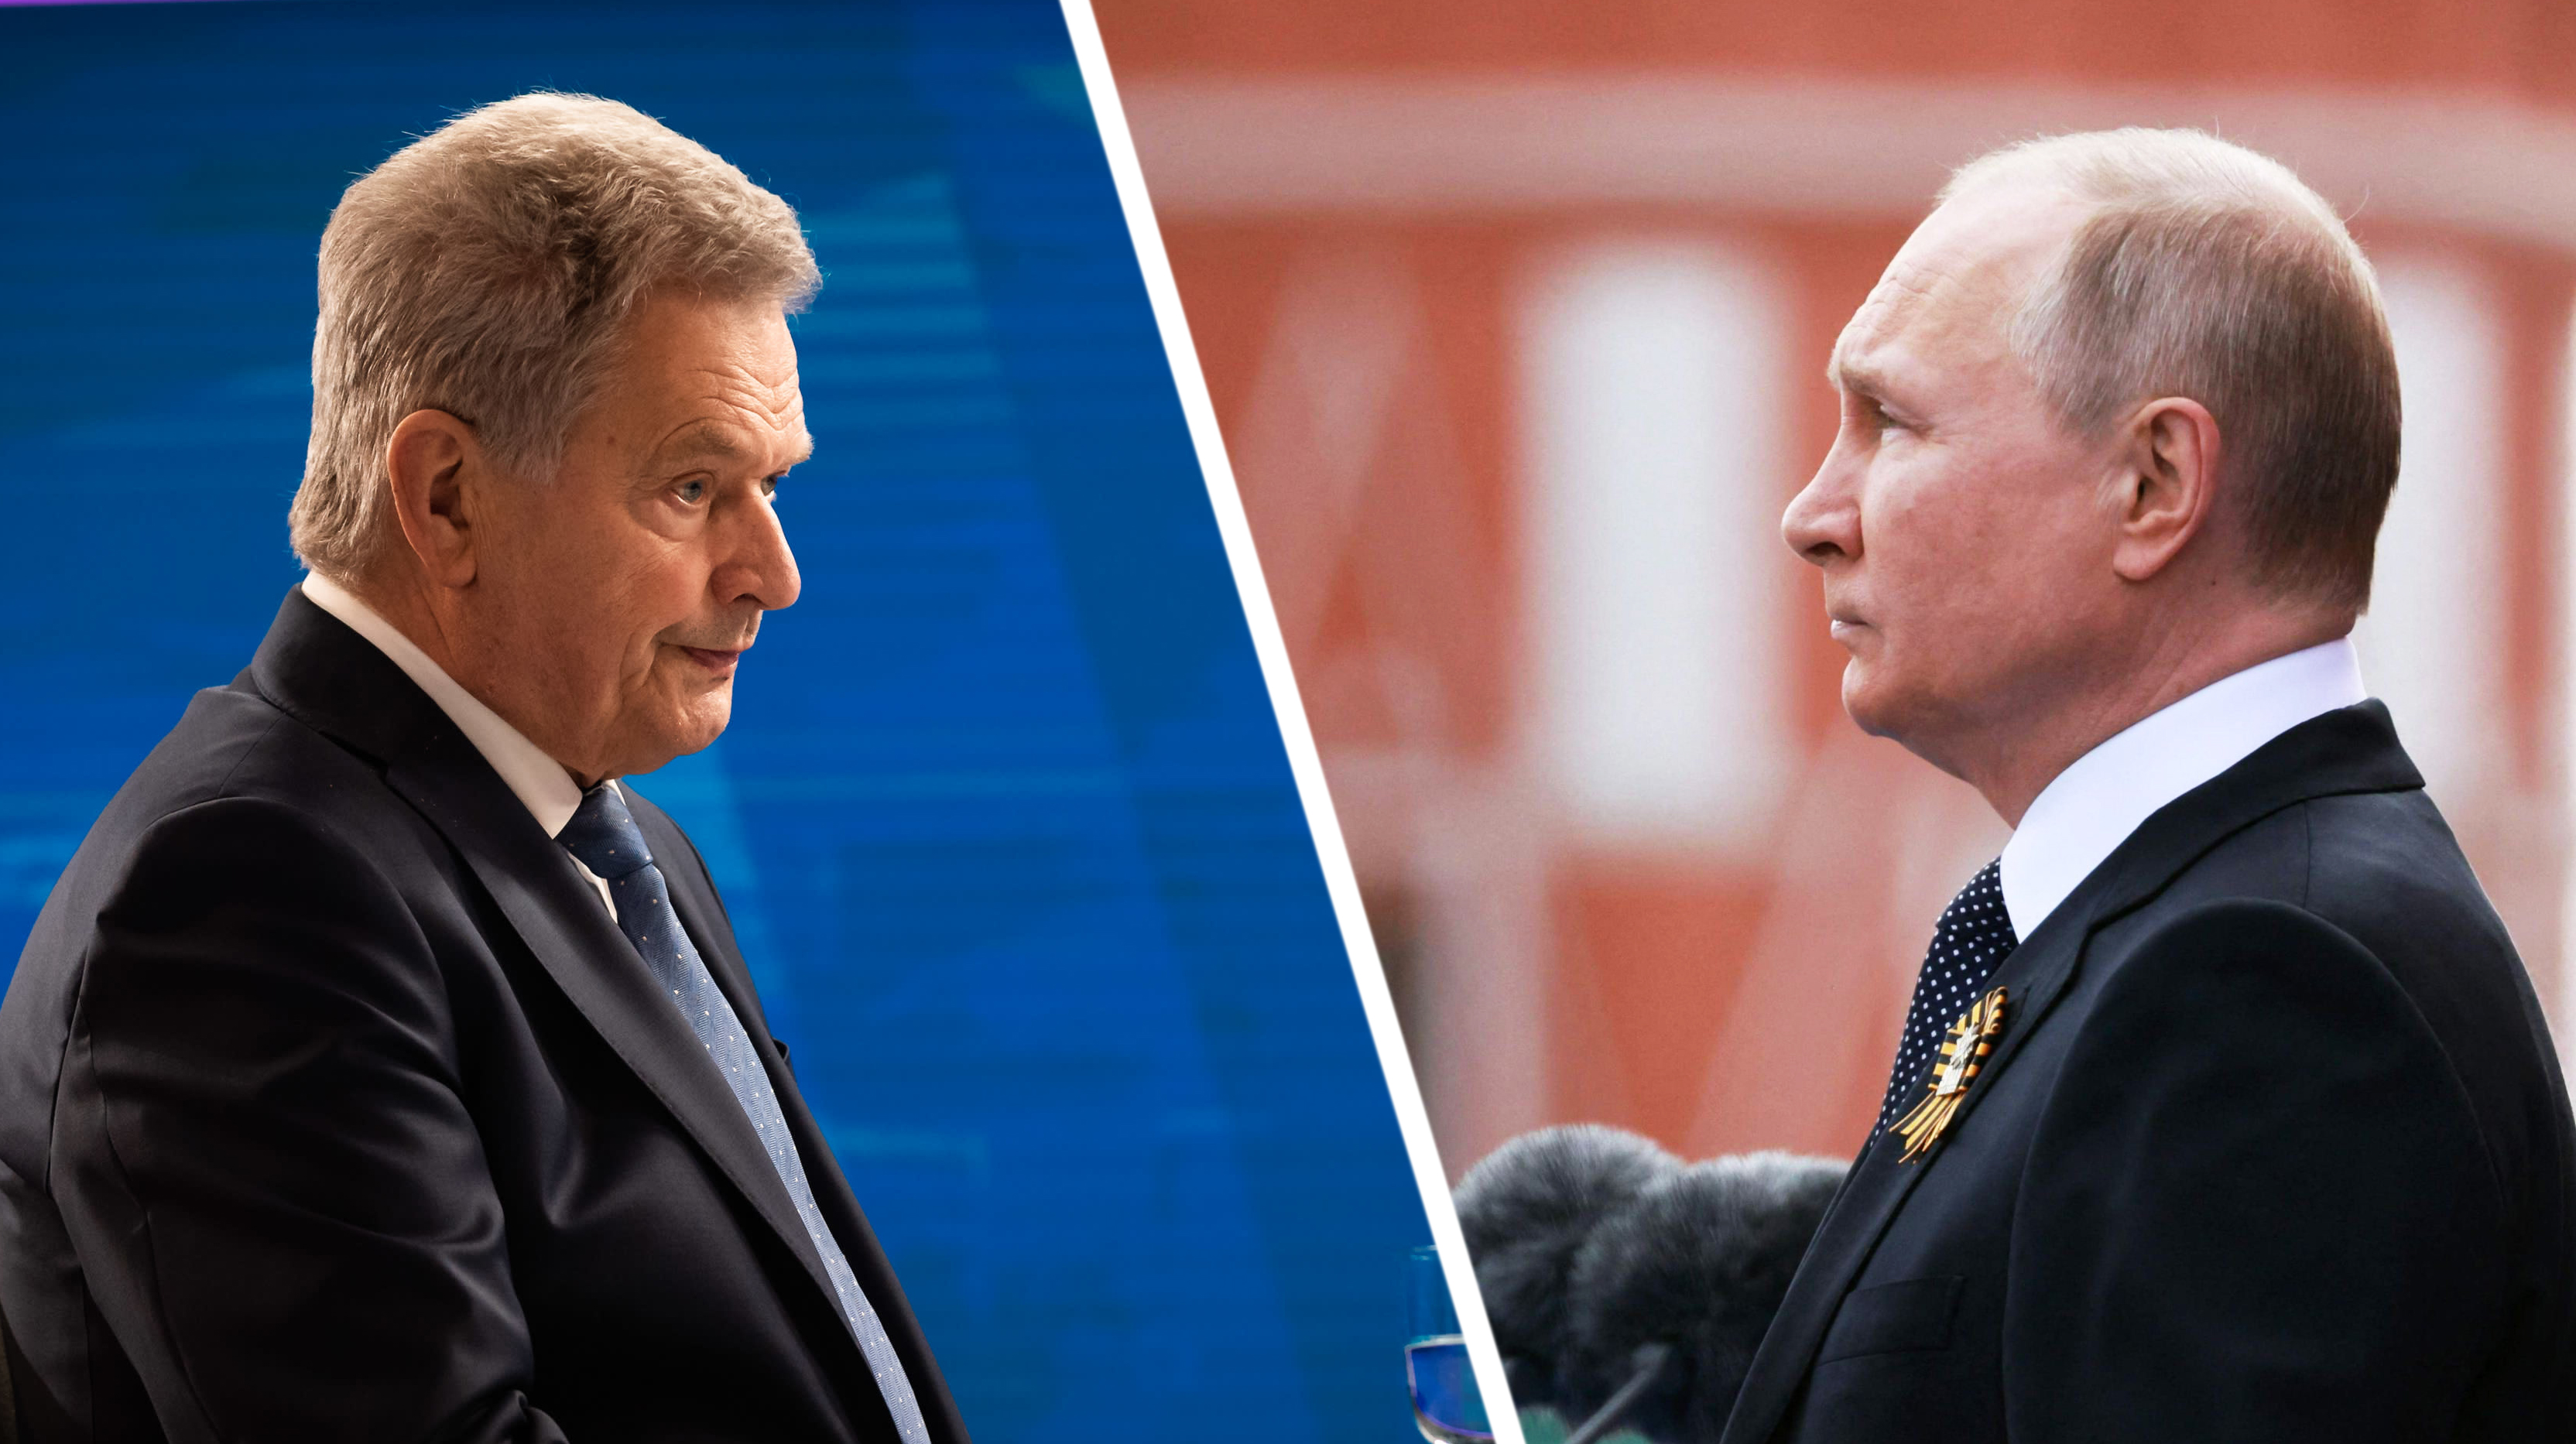 Niinistö to Putin: Finland will soon apply for NATO